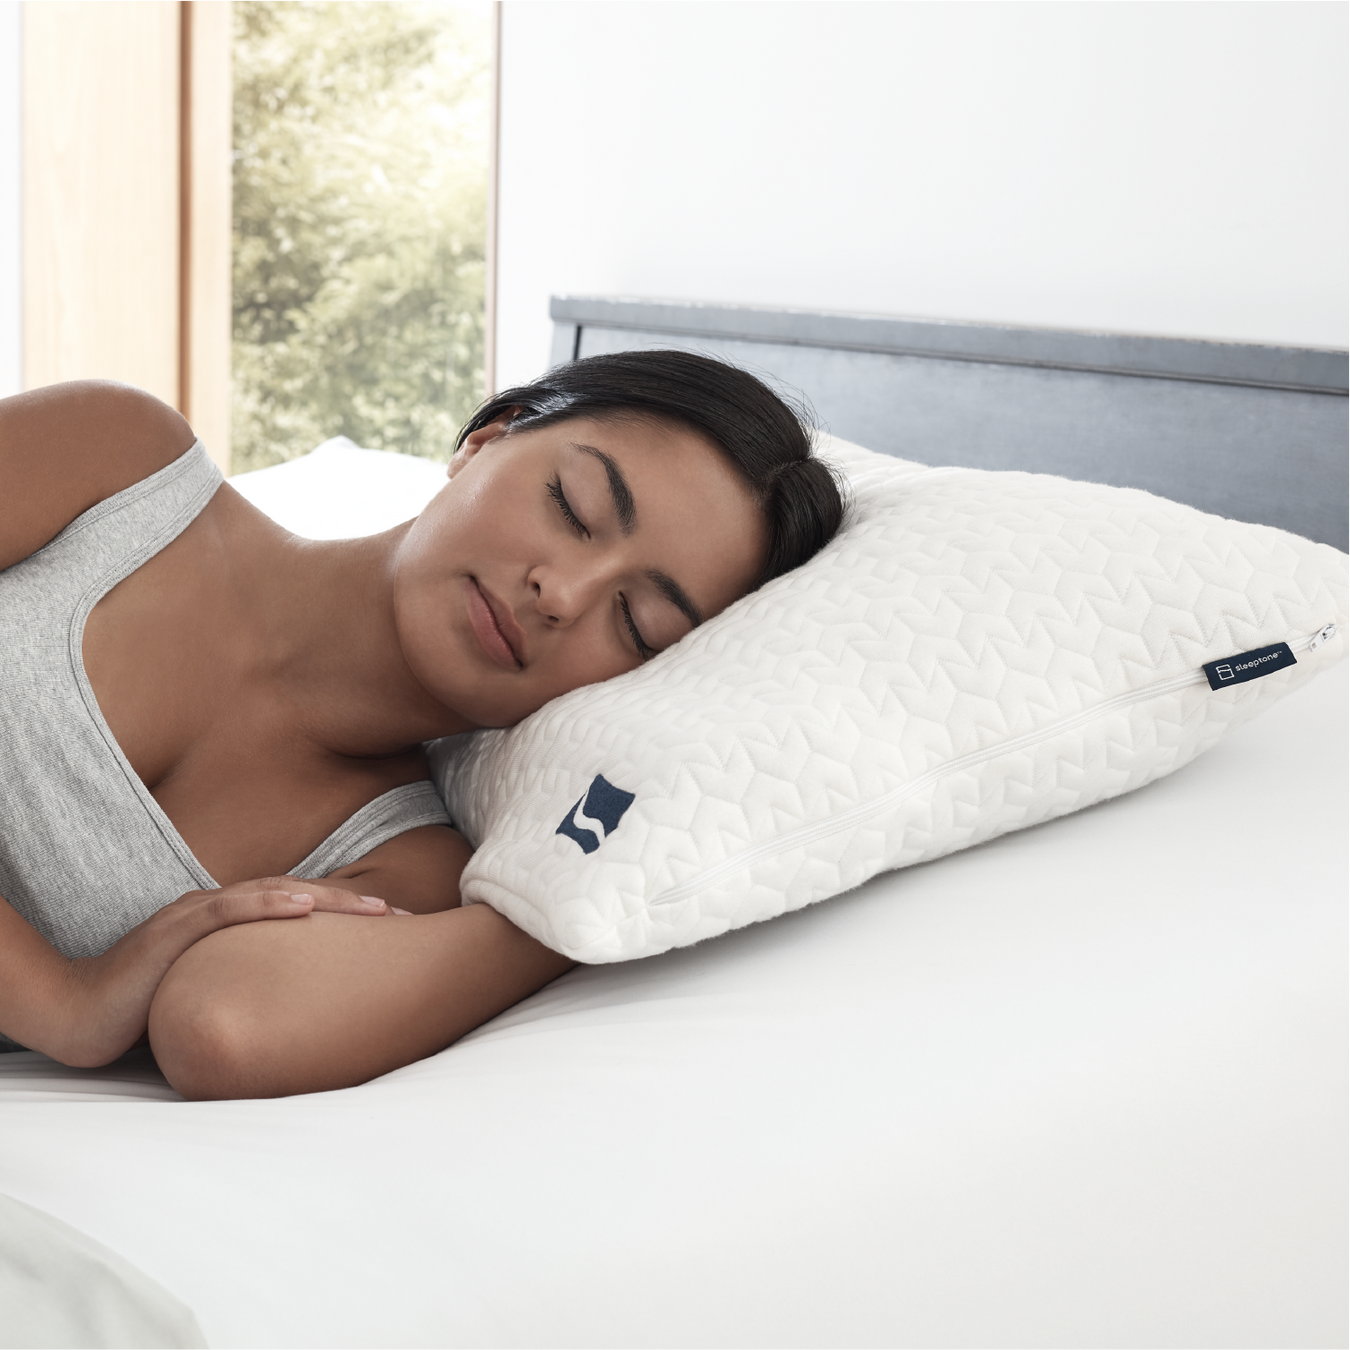 sleeptone adjustable bed pillow, sleep deep, comfort